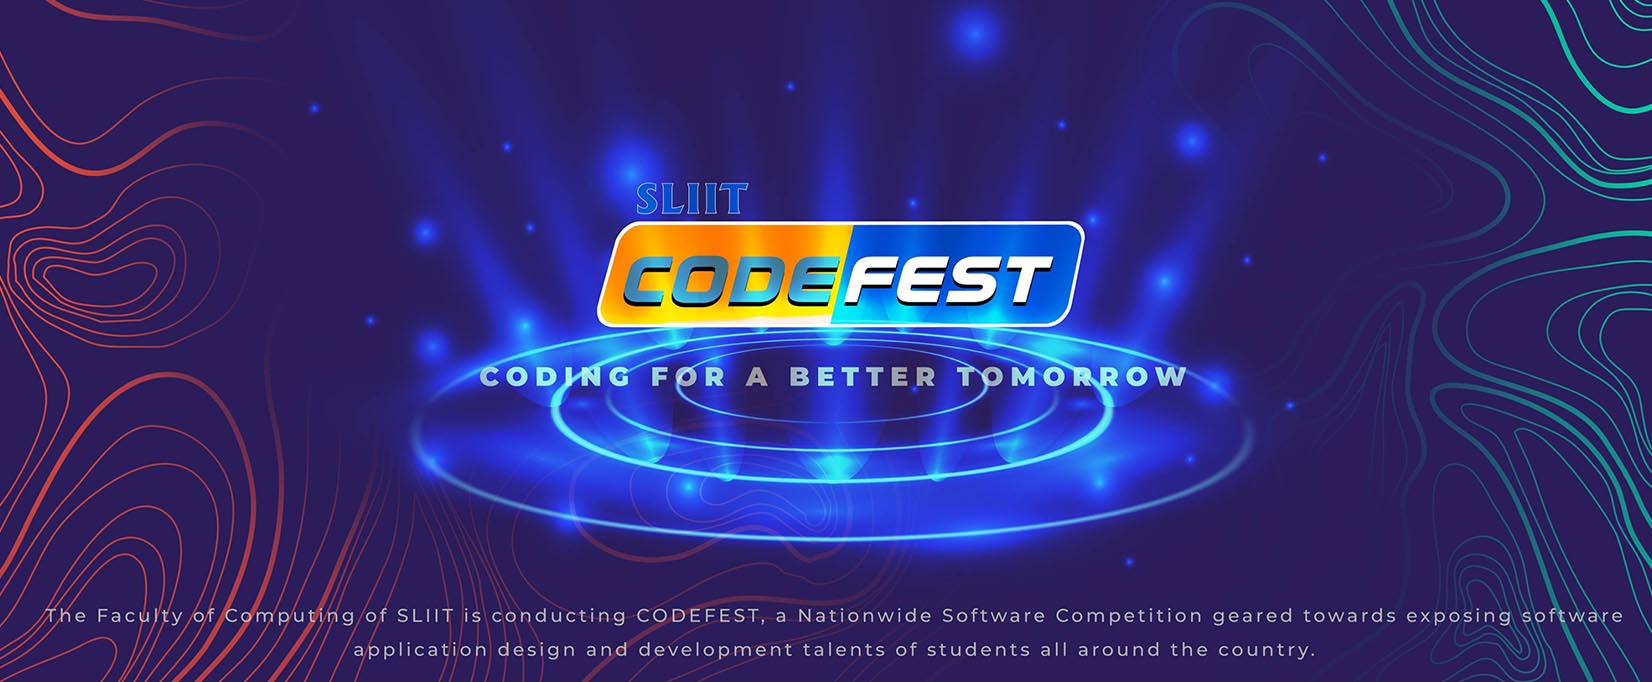 Codfest 2020